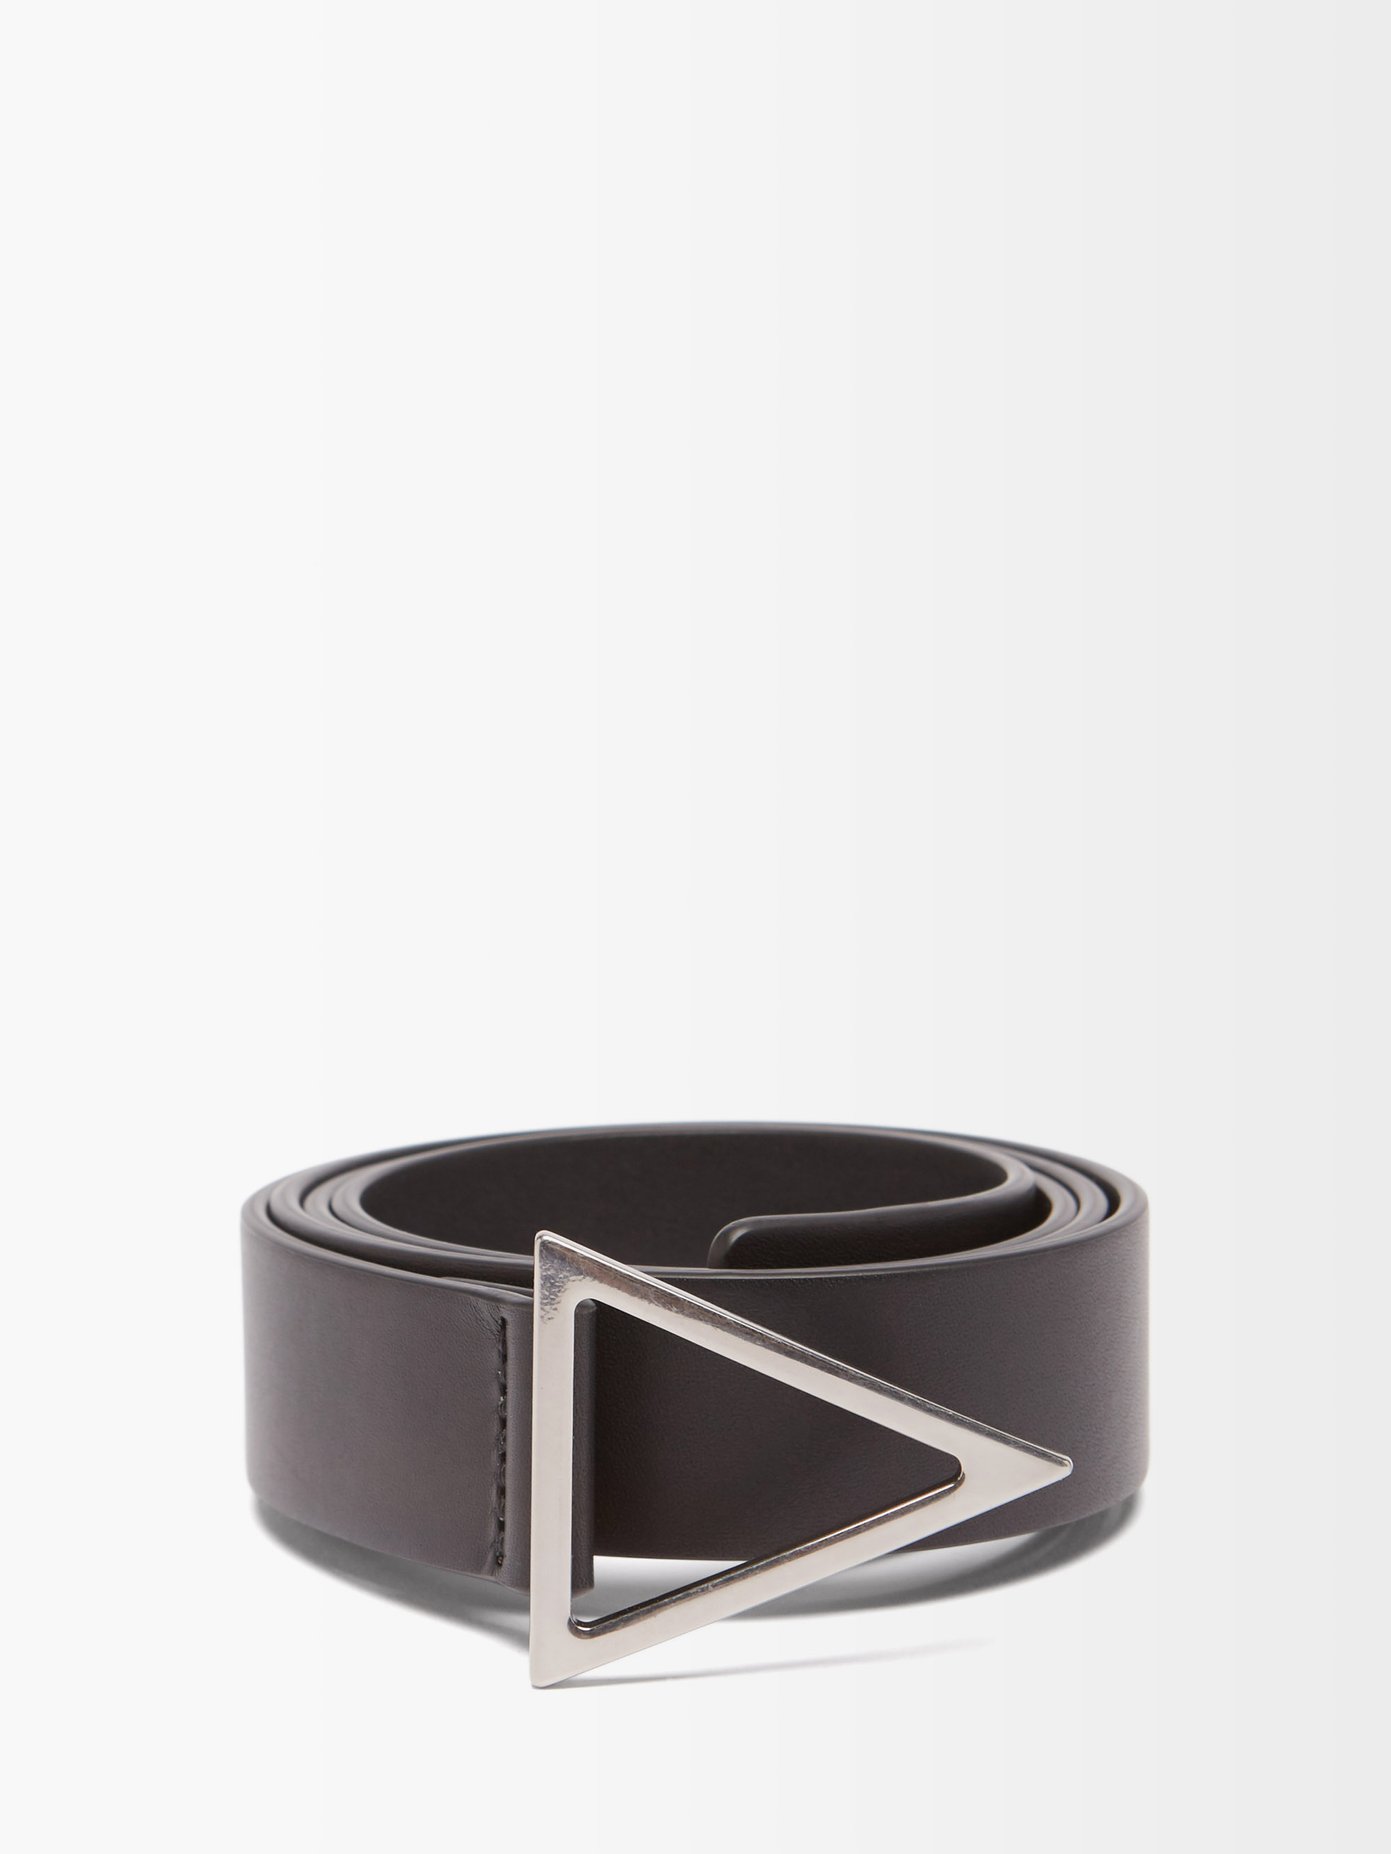 보테가 베네타 트라이앵글 버클 벨트 Bottega Veneta Black Triangle-buckle smooth-leather belt